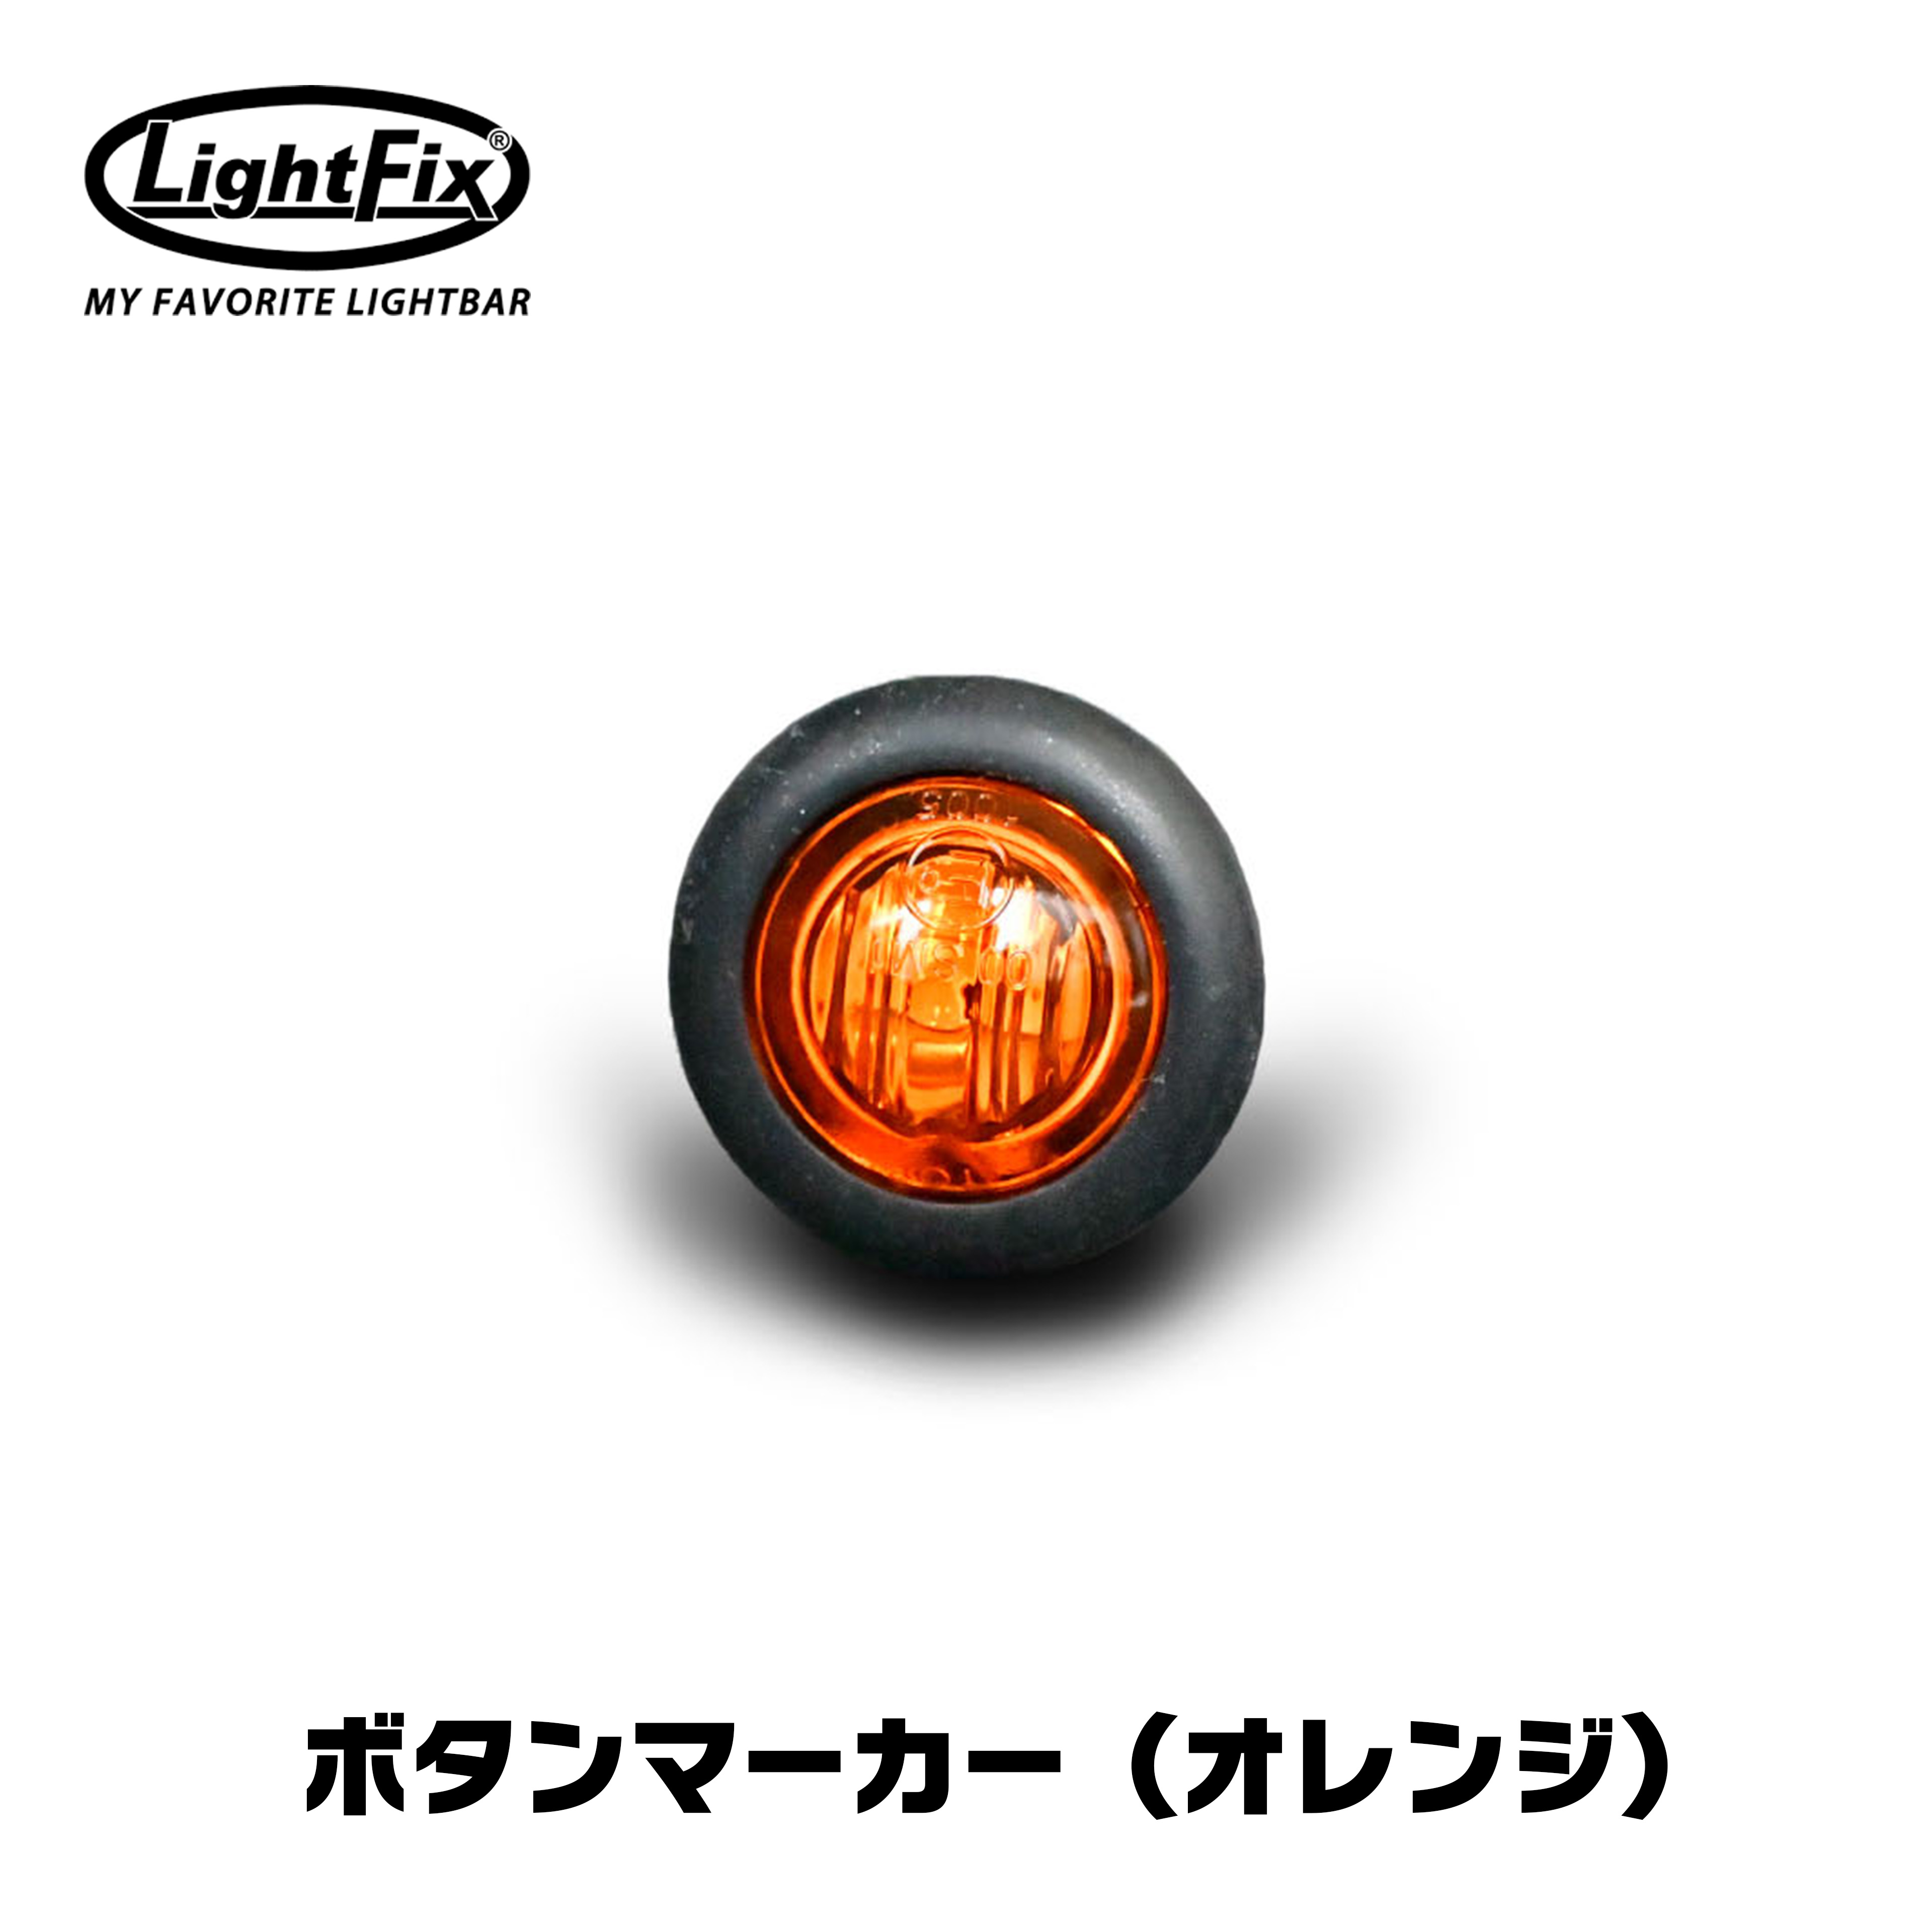 【送料無料】LightFix ライトフィックス マーカー ランプ サイド オレンジ アンバー ボタン 丸型 ユーロ カスタム ボルボ スカニア24V scania volvo fh